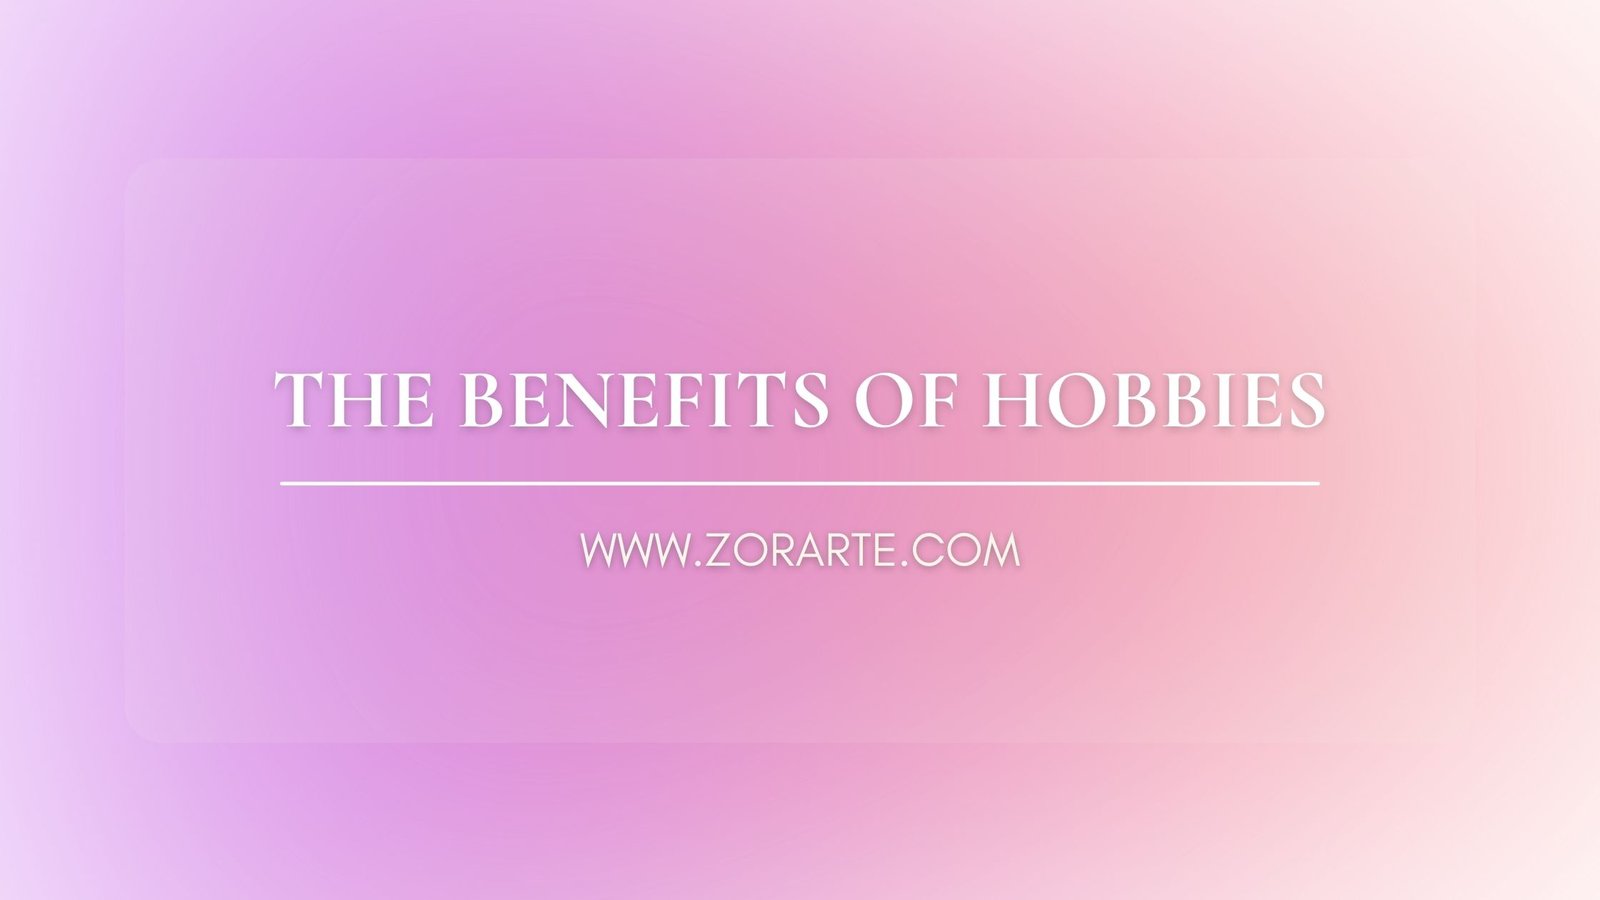 The Benefits of Hobbies